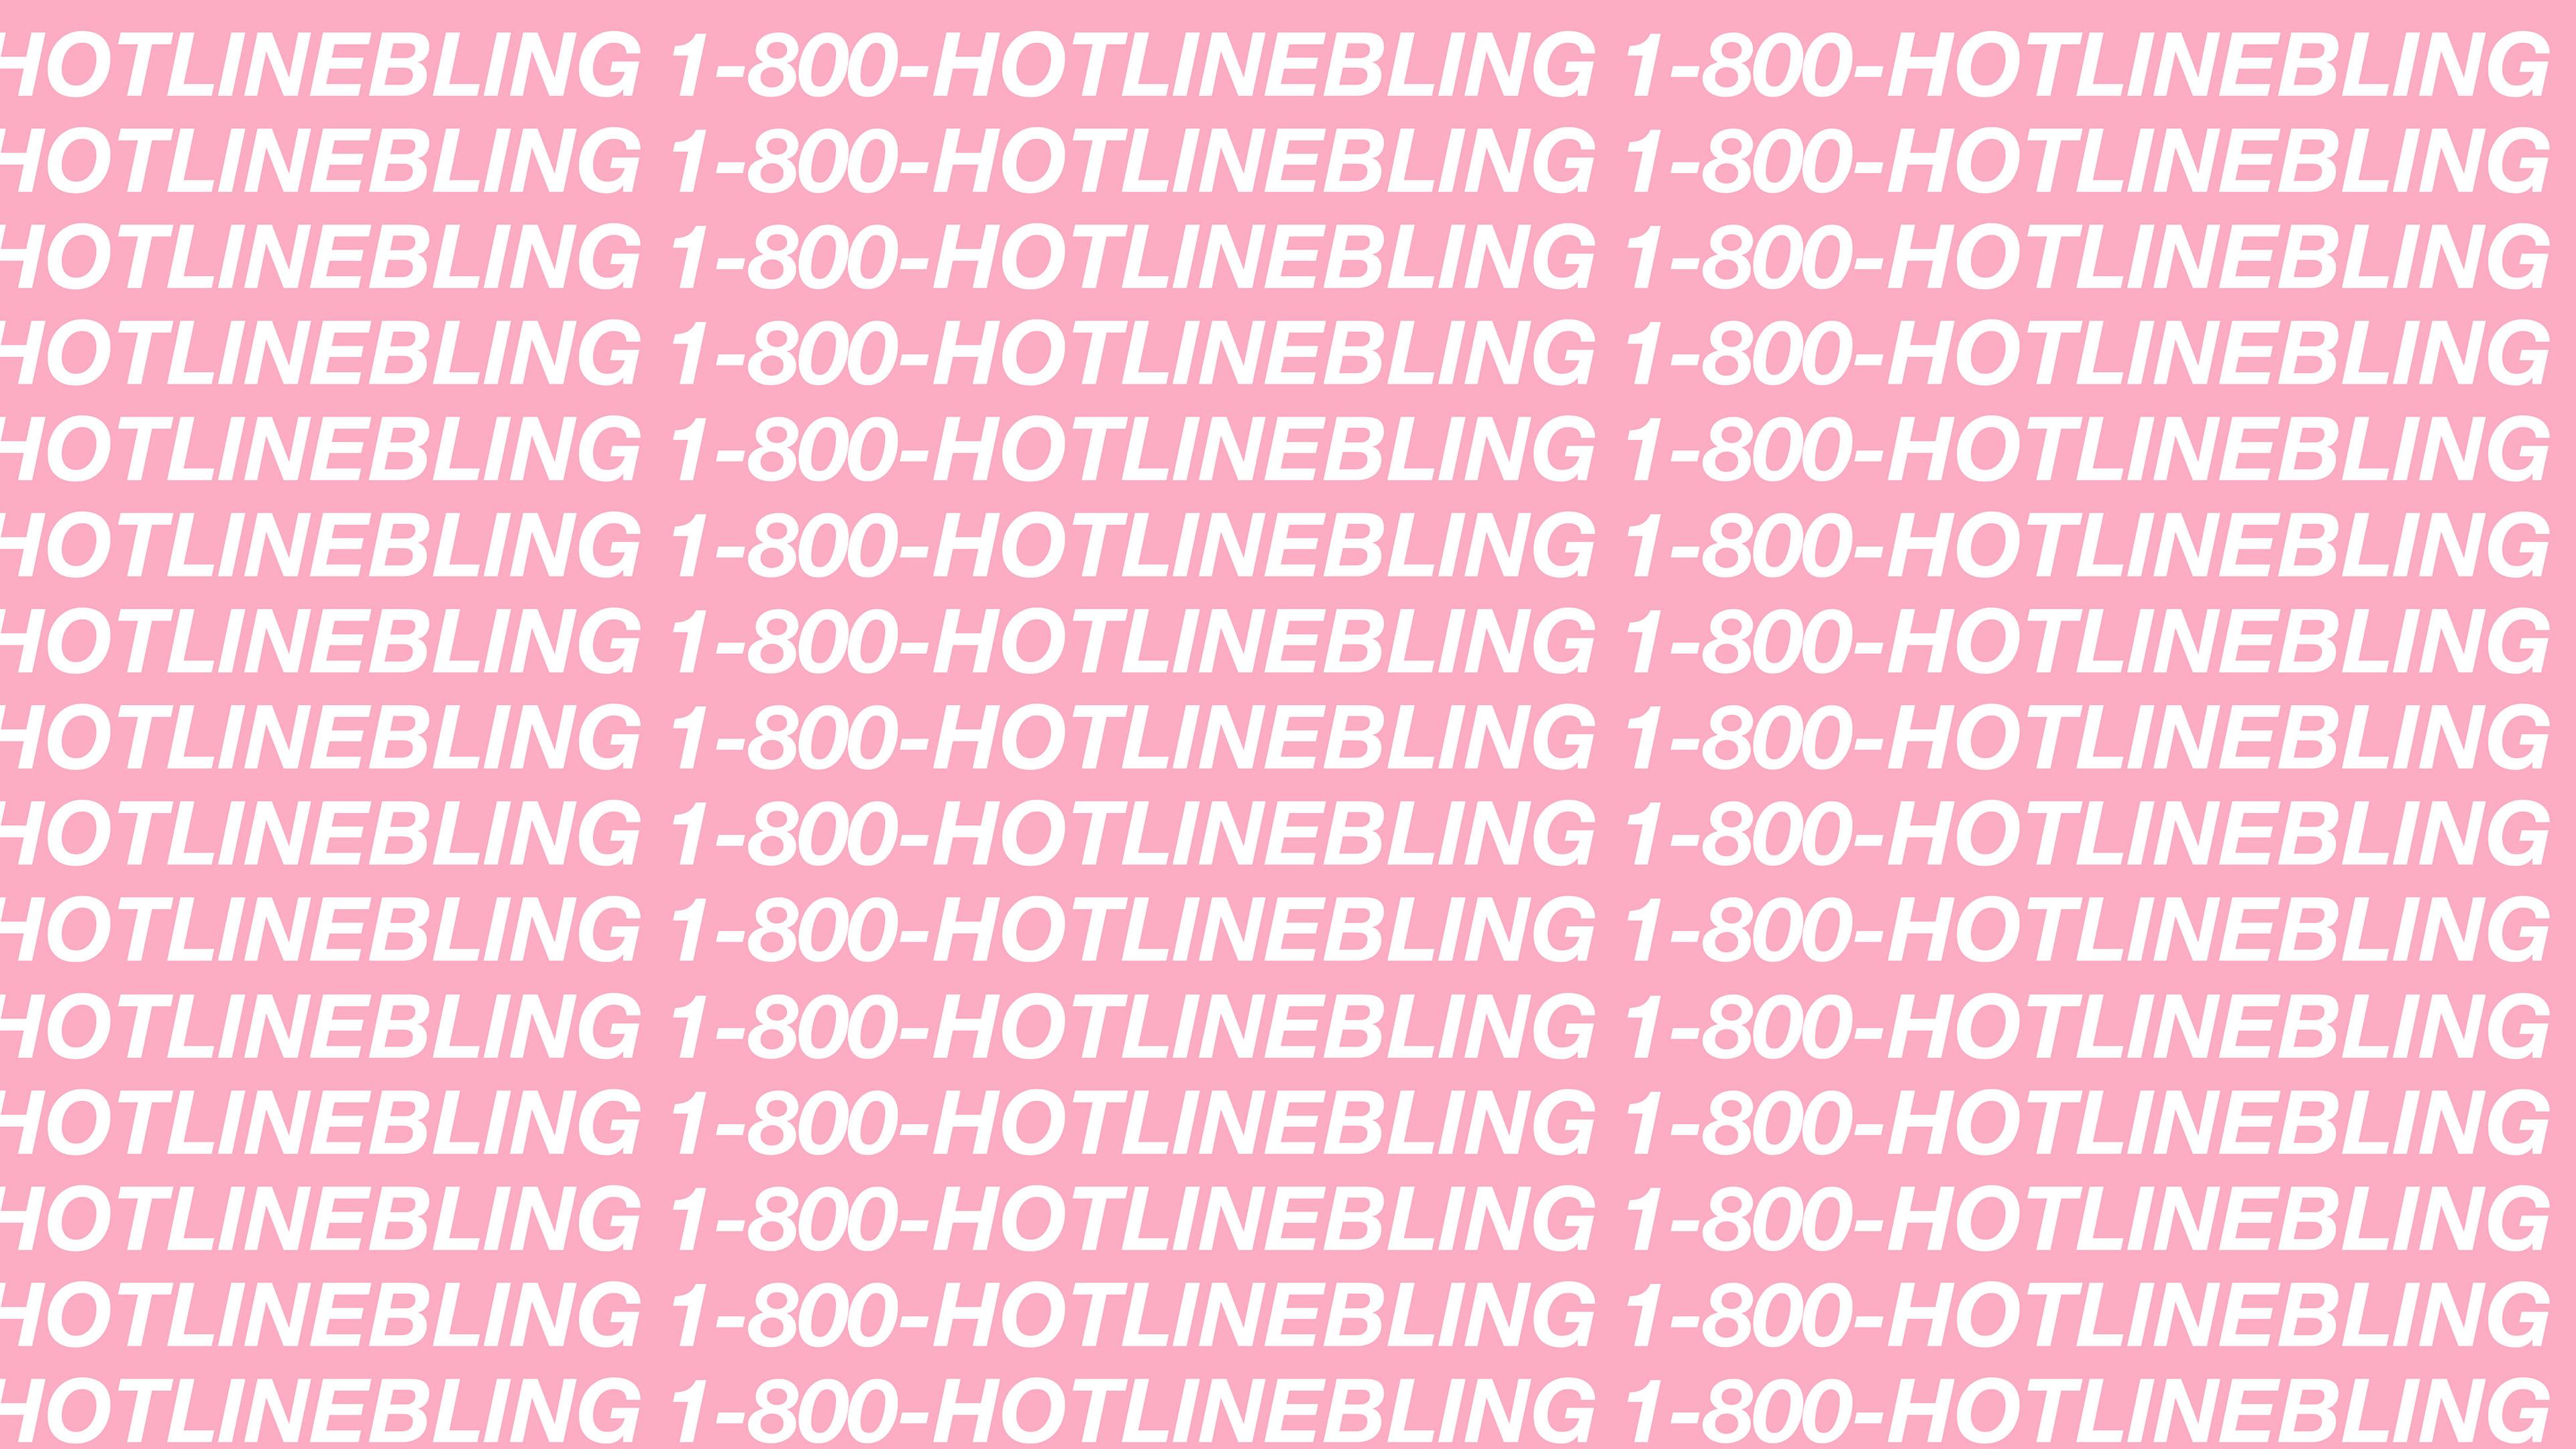 1 800 HOTLINEBLING